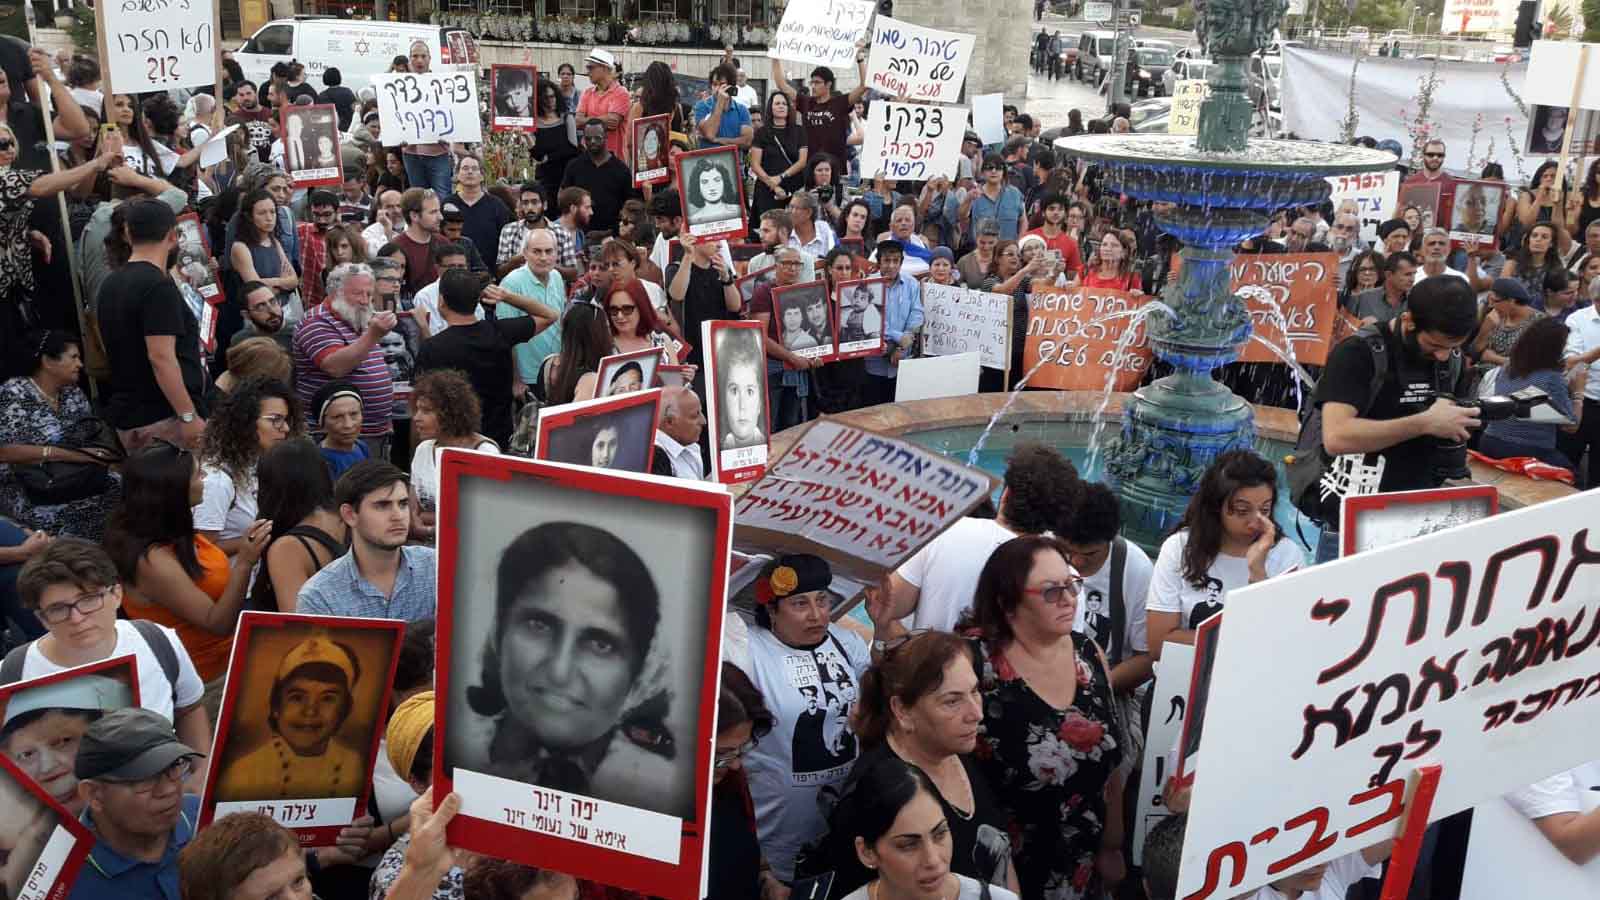 הפגנה בדרישה להכרה בחטיפות ילדי תימן , המזרח והבלקן (צילום באדיבות עמרם)